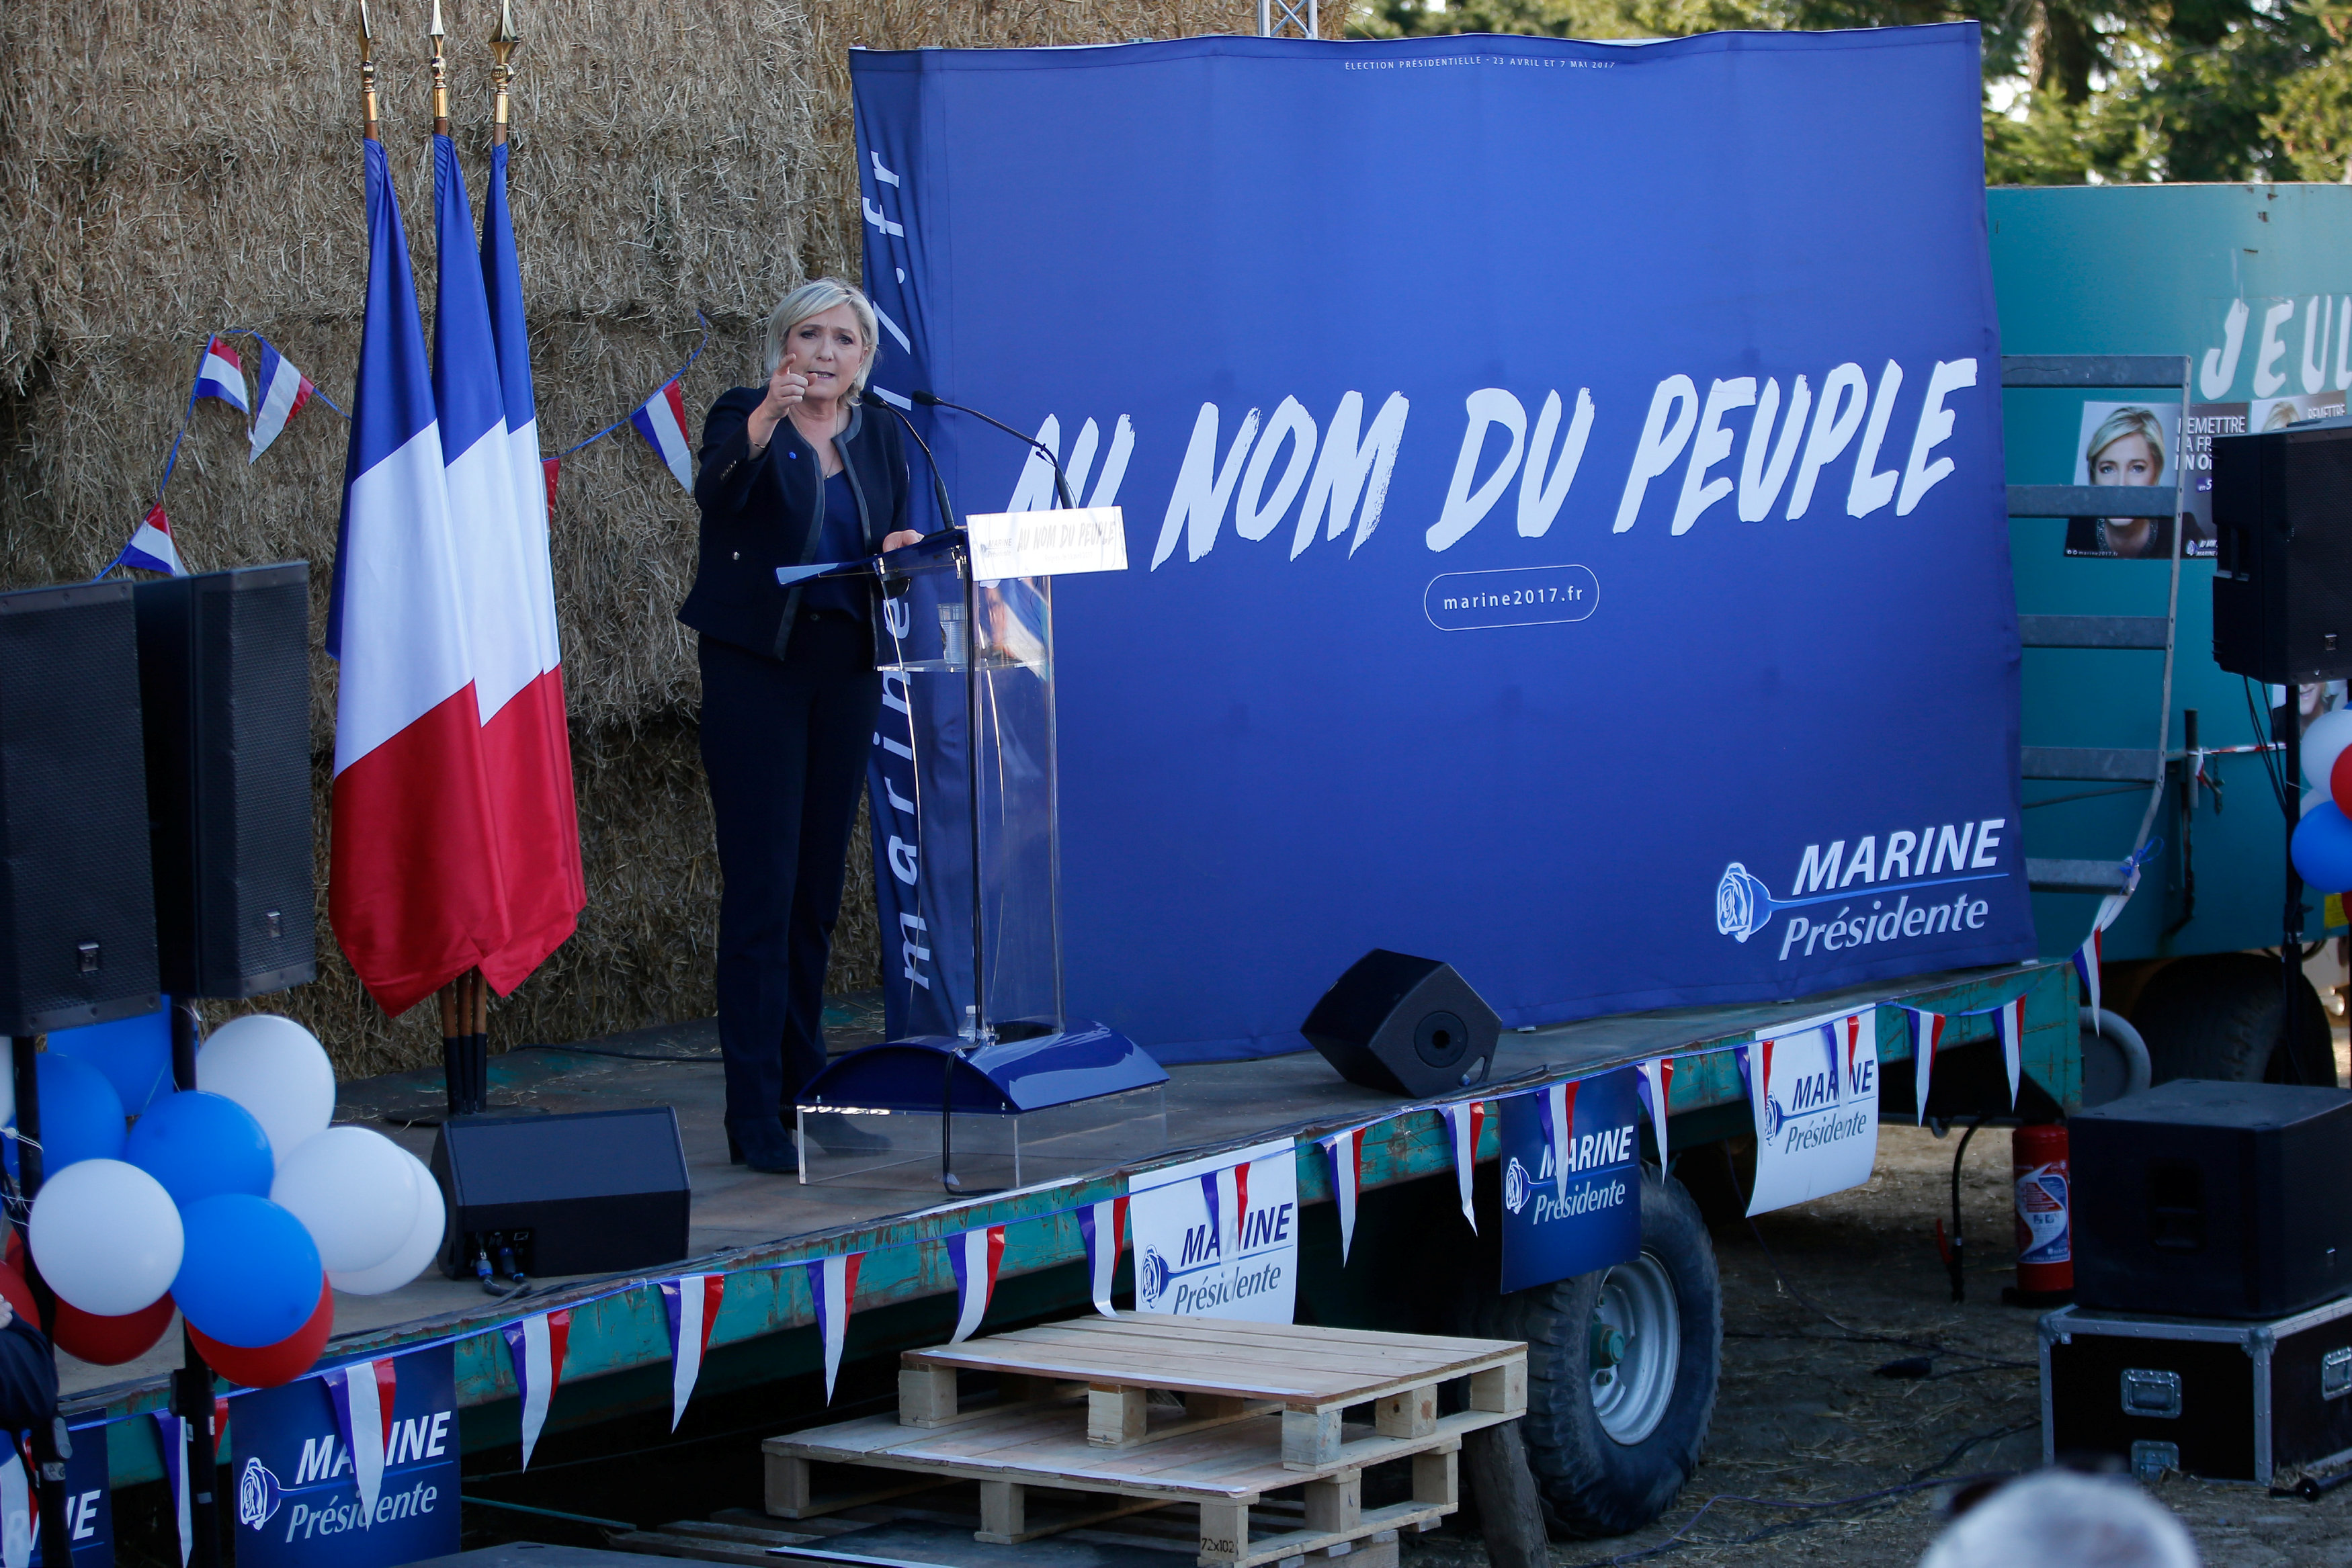 Le Pen: İslami Kuruluşlar Birliği toplantısı yasaklansın